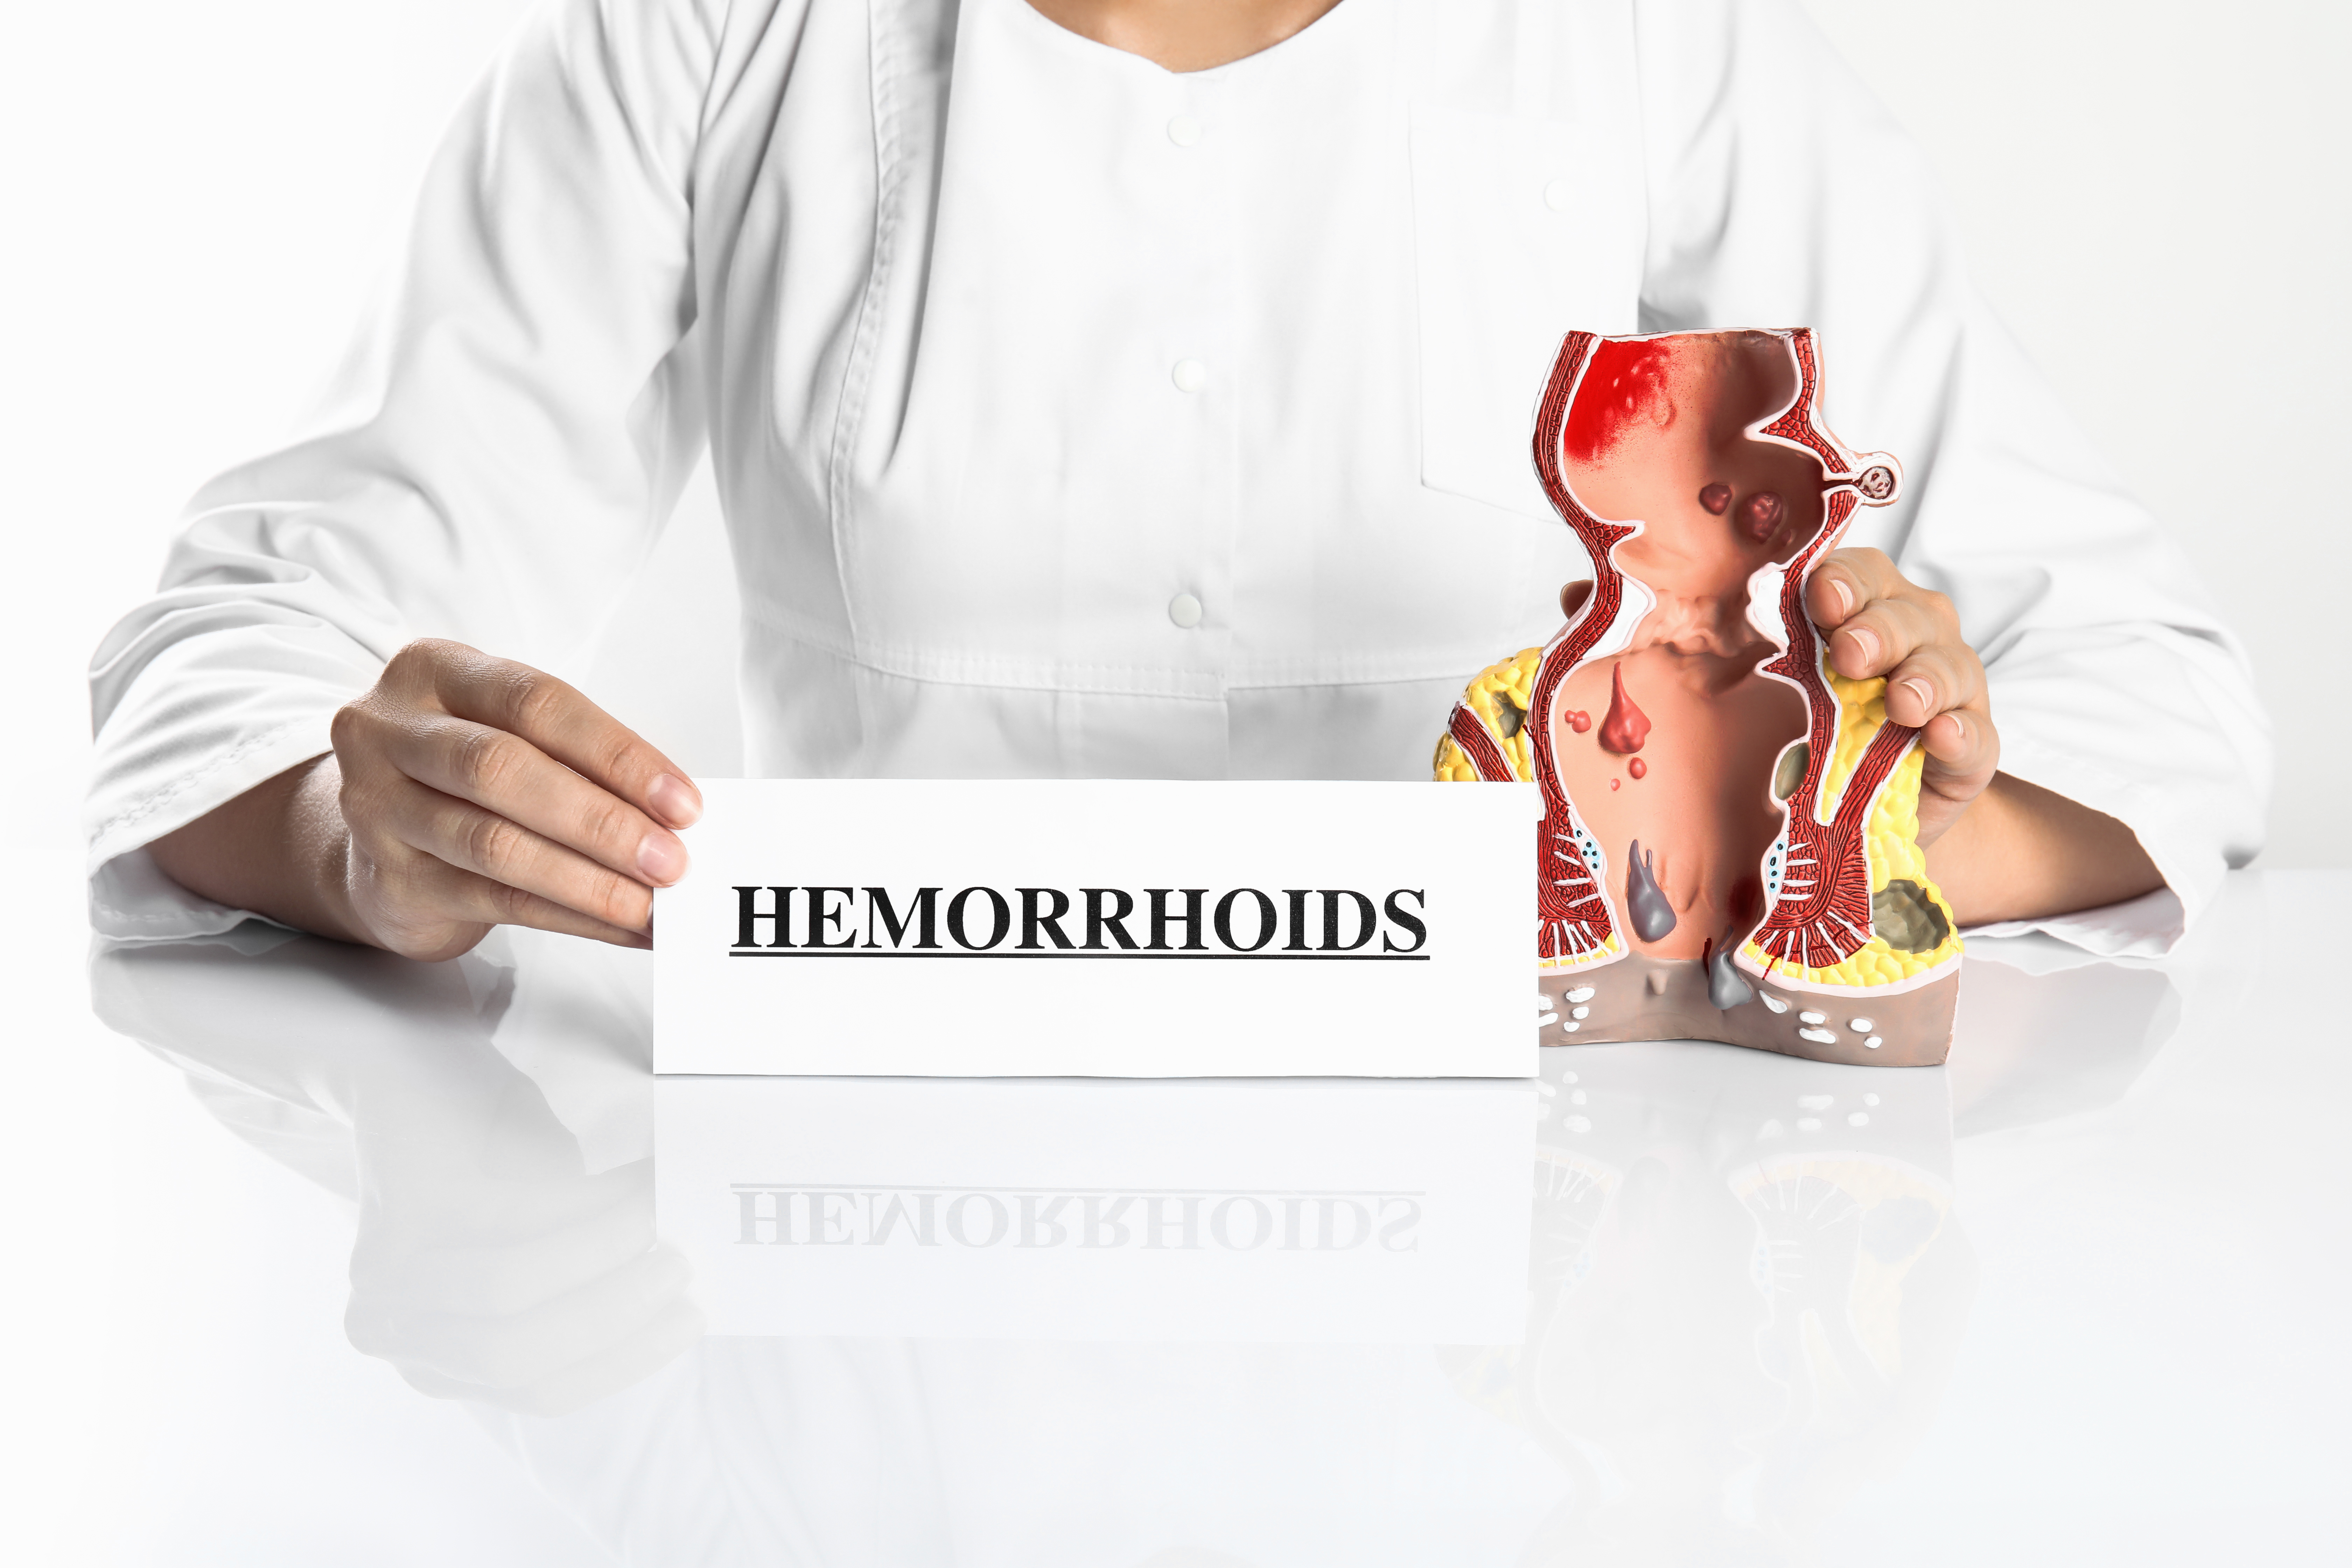 External hemorrhoids